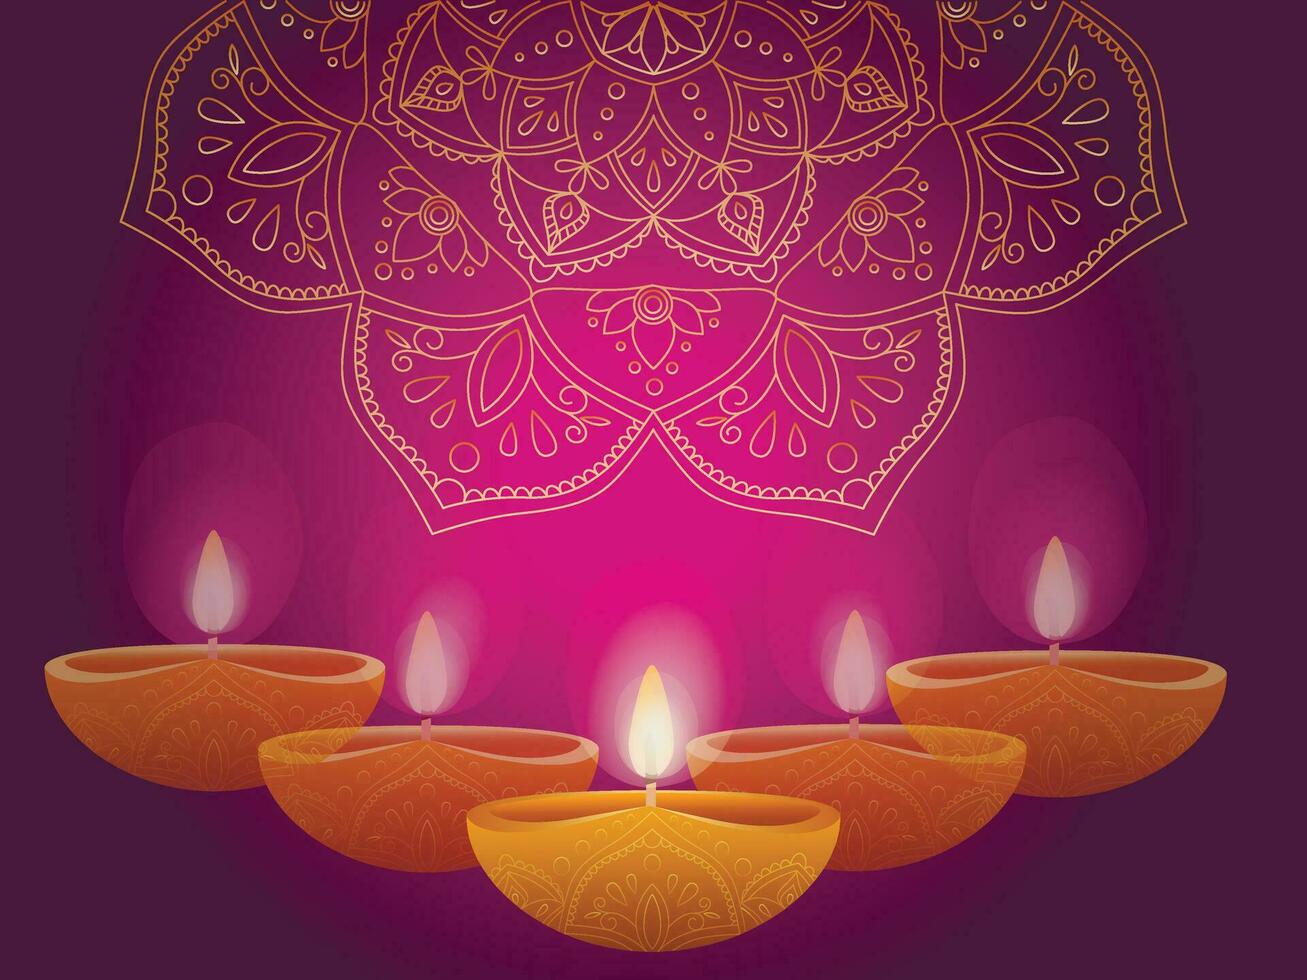 gelukkig diwali Indisch festival van lichten met diya - traditioneel olie lamp en ornament van rangoli. plaats voor tekst. vector illustratie.